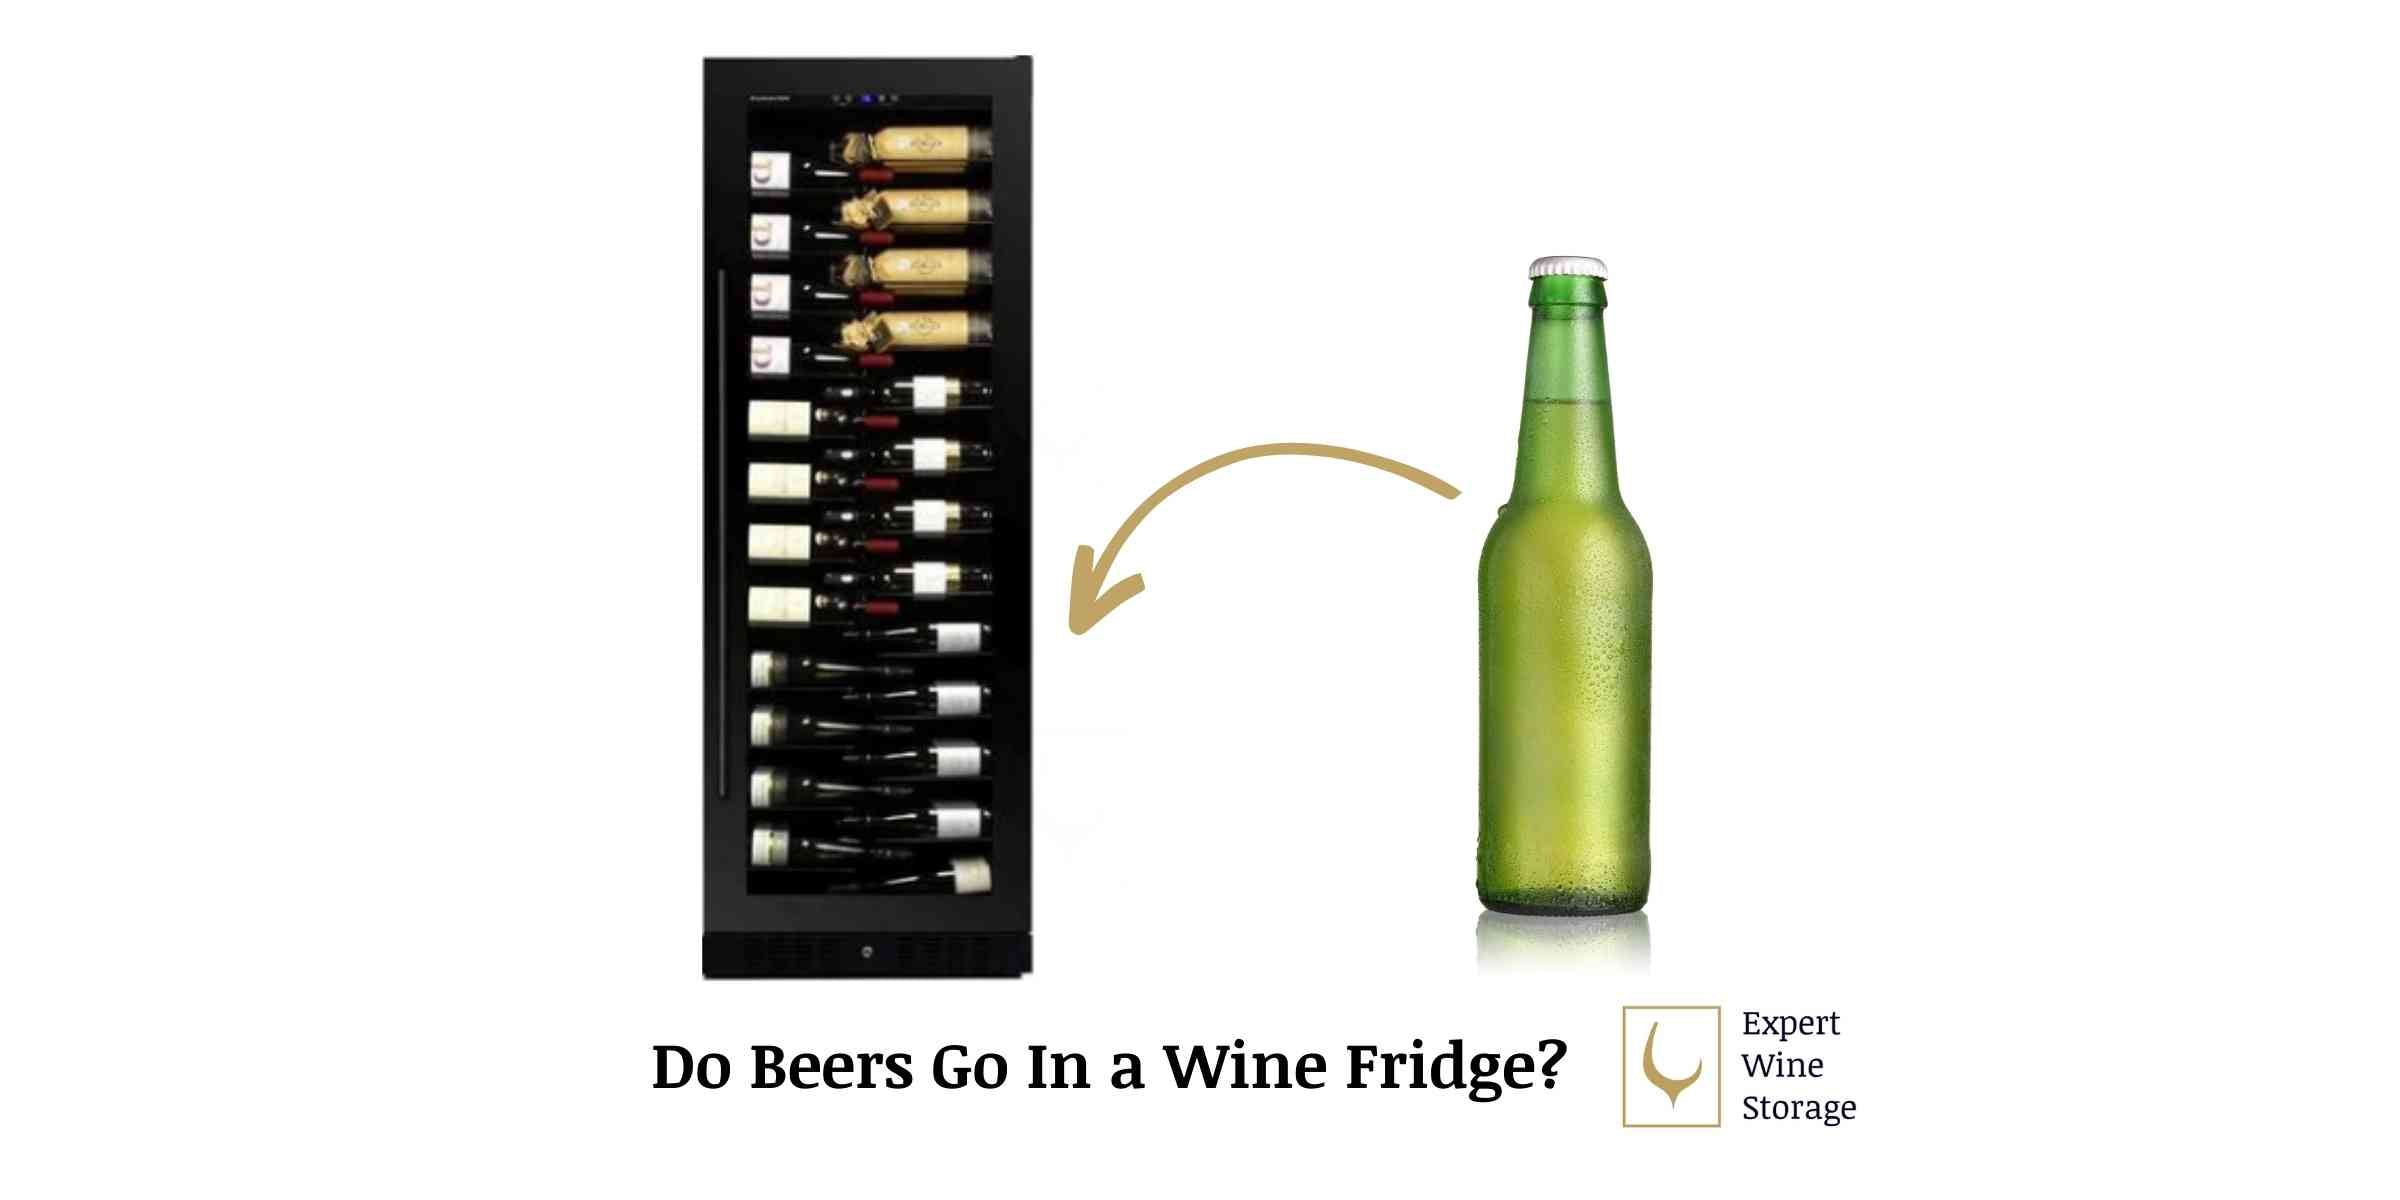 Beer in a wine fridge